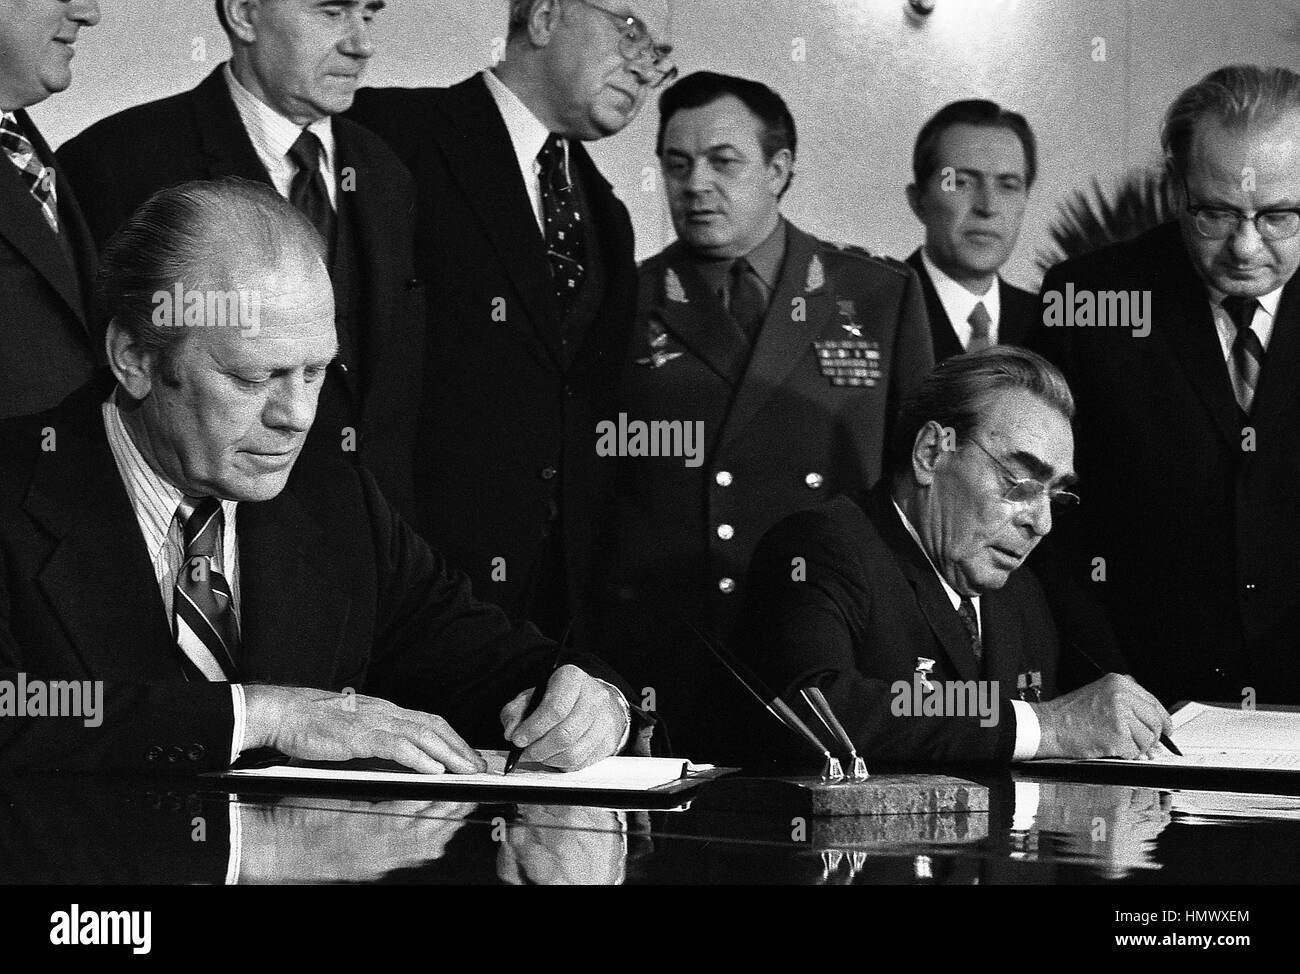 US-Präsident Gerald Ford und sowjetischen Generalsekretär Leonid Brezhnev unterzeichnen eine gemeinsame Kommunique über die Begrenzung der strategischen Offensivwaffen im Konferenzsaal des Sanatoriums Okeansky 24. November 1974 in Wladiwostok, Russland, UdSSR. Ford ist in Wladiwostok zu einem zweitägigen Gipfel über Rüstungskontrolle. Stockfoto